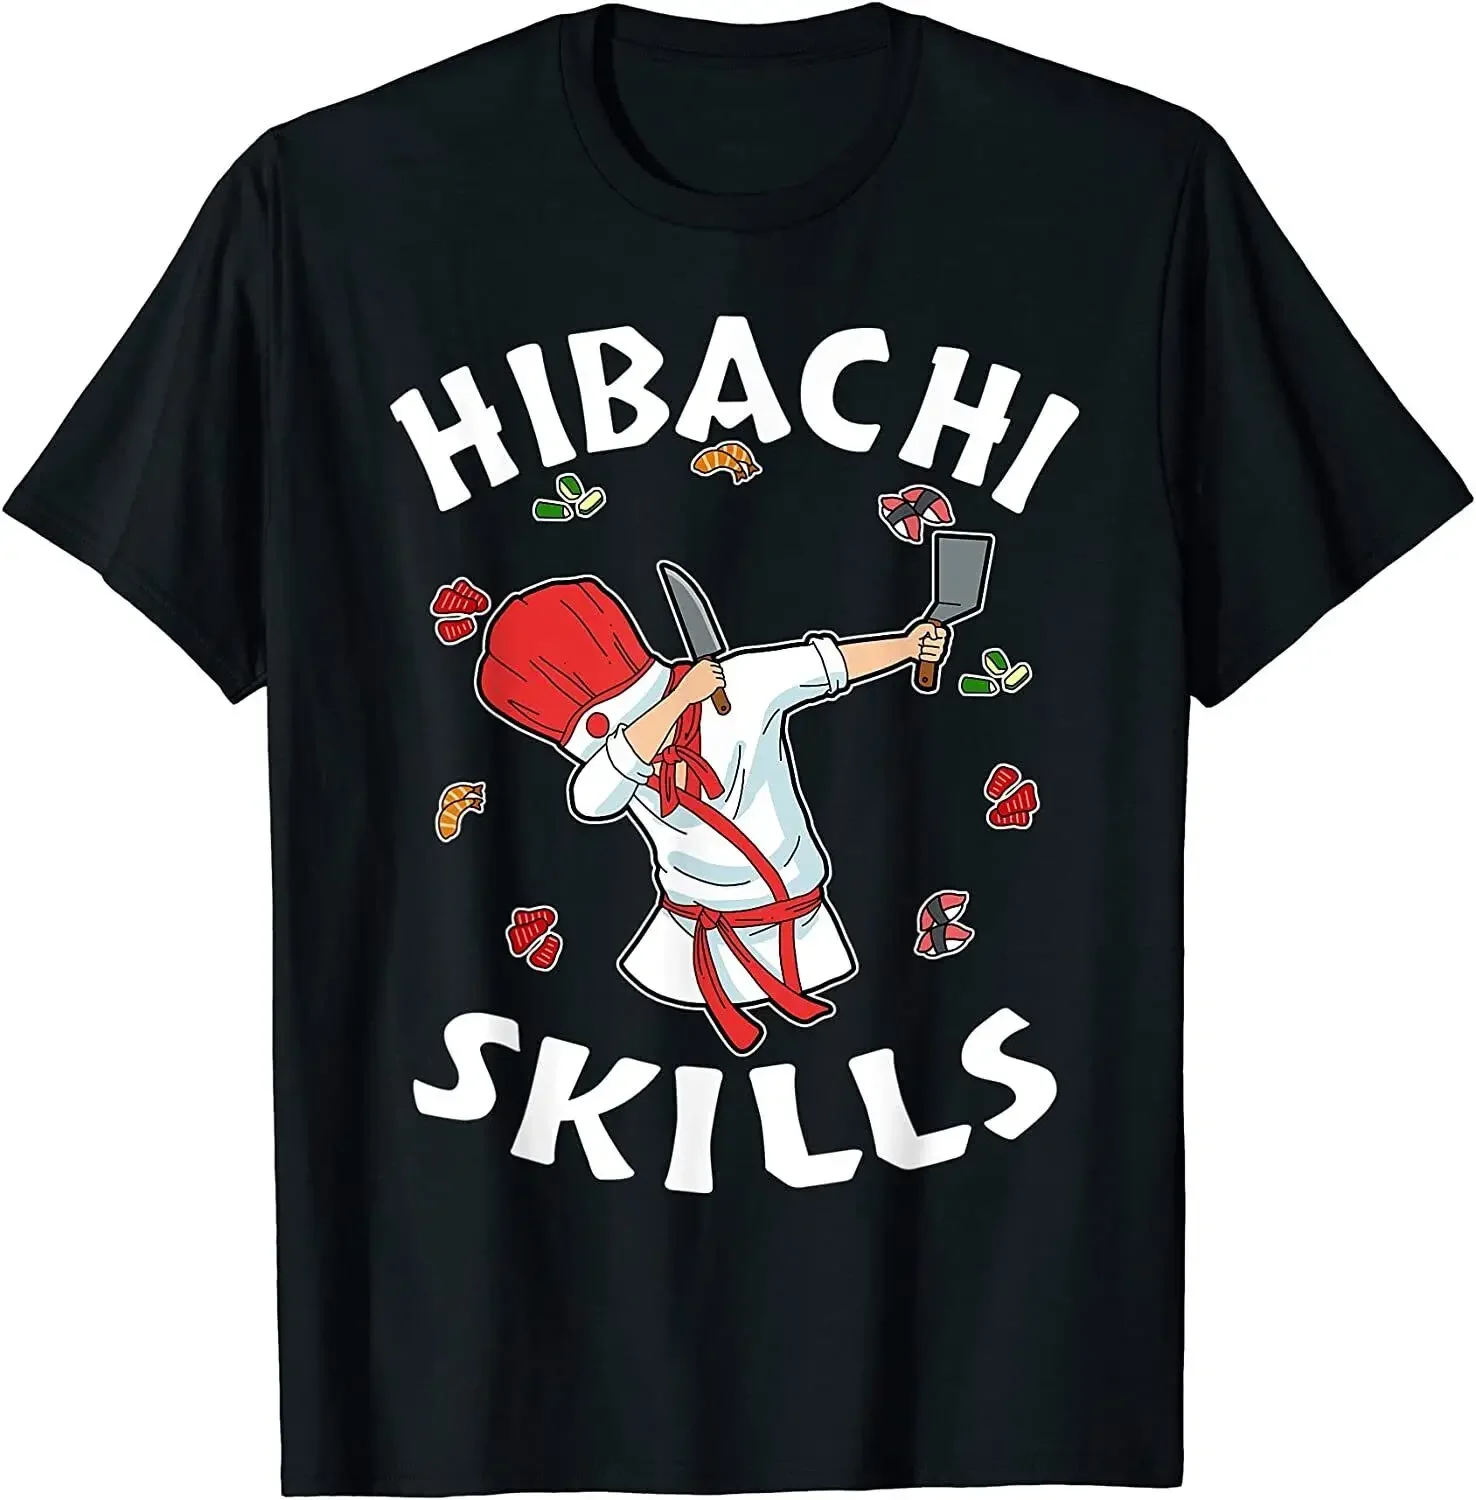 

Hibachi, подарки для ценителей, костюм шеф-повара Hibachi, винтажная крутая хлопковая футболка, мужские повседневные майки футболки, Прямая поставка